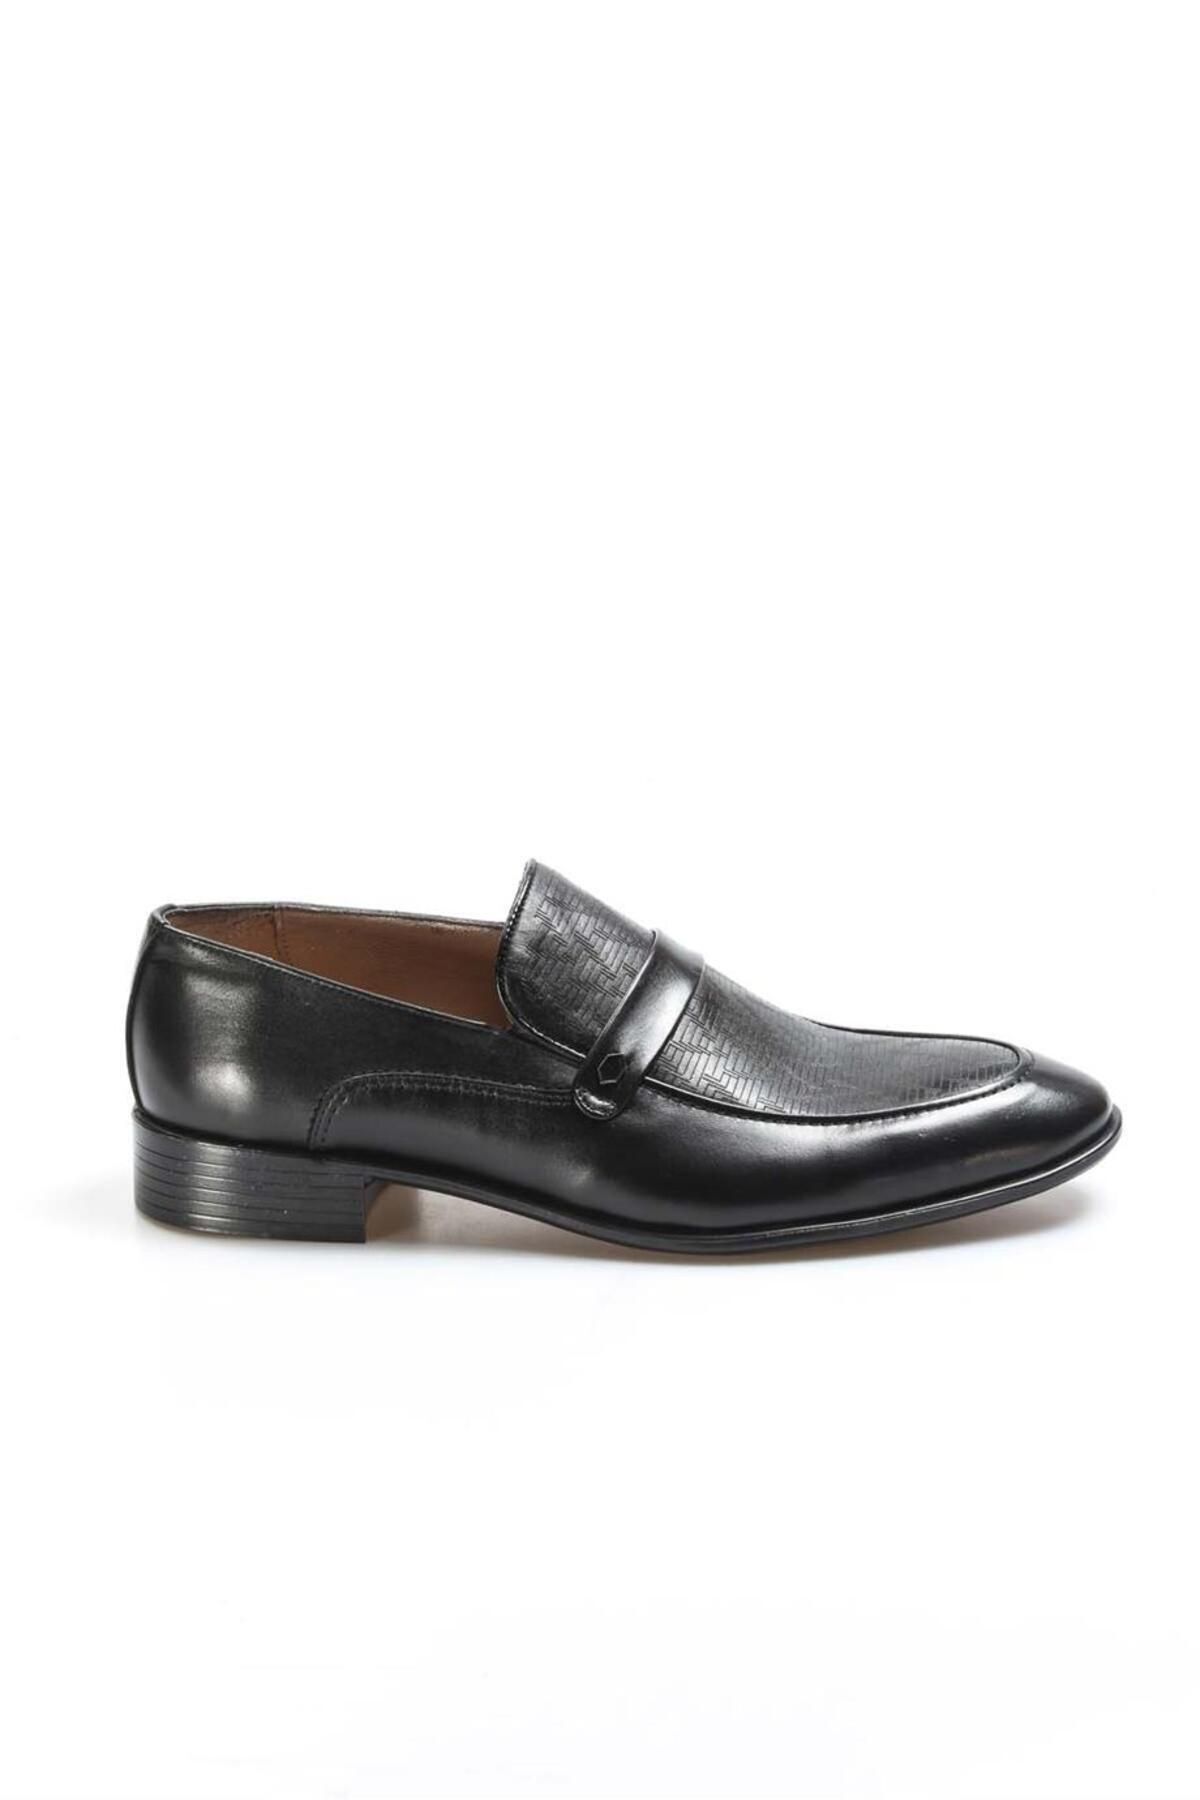 Fast Step Hakiki Deri Siyah Erkek Makosen Ayakkabı, Klasik Ayakkabı 851ma5141